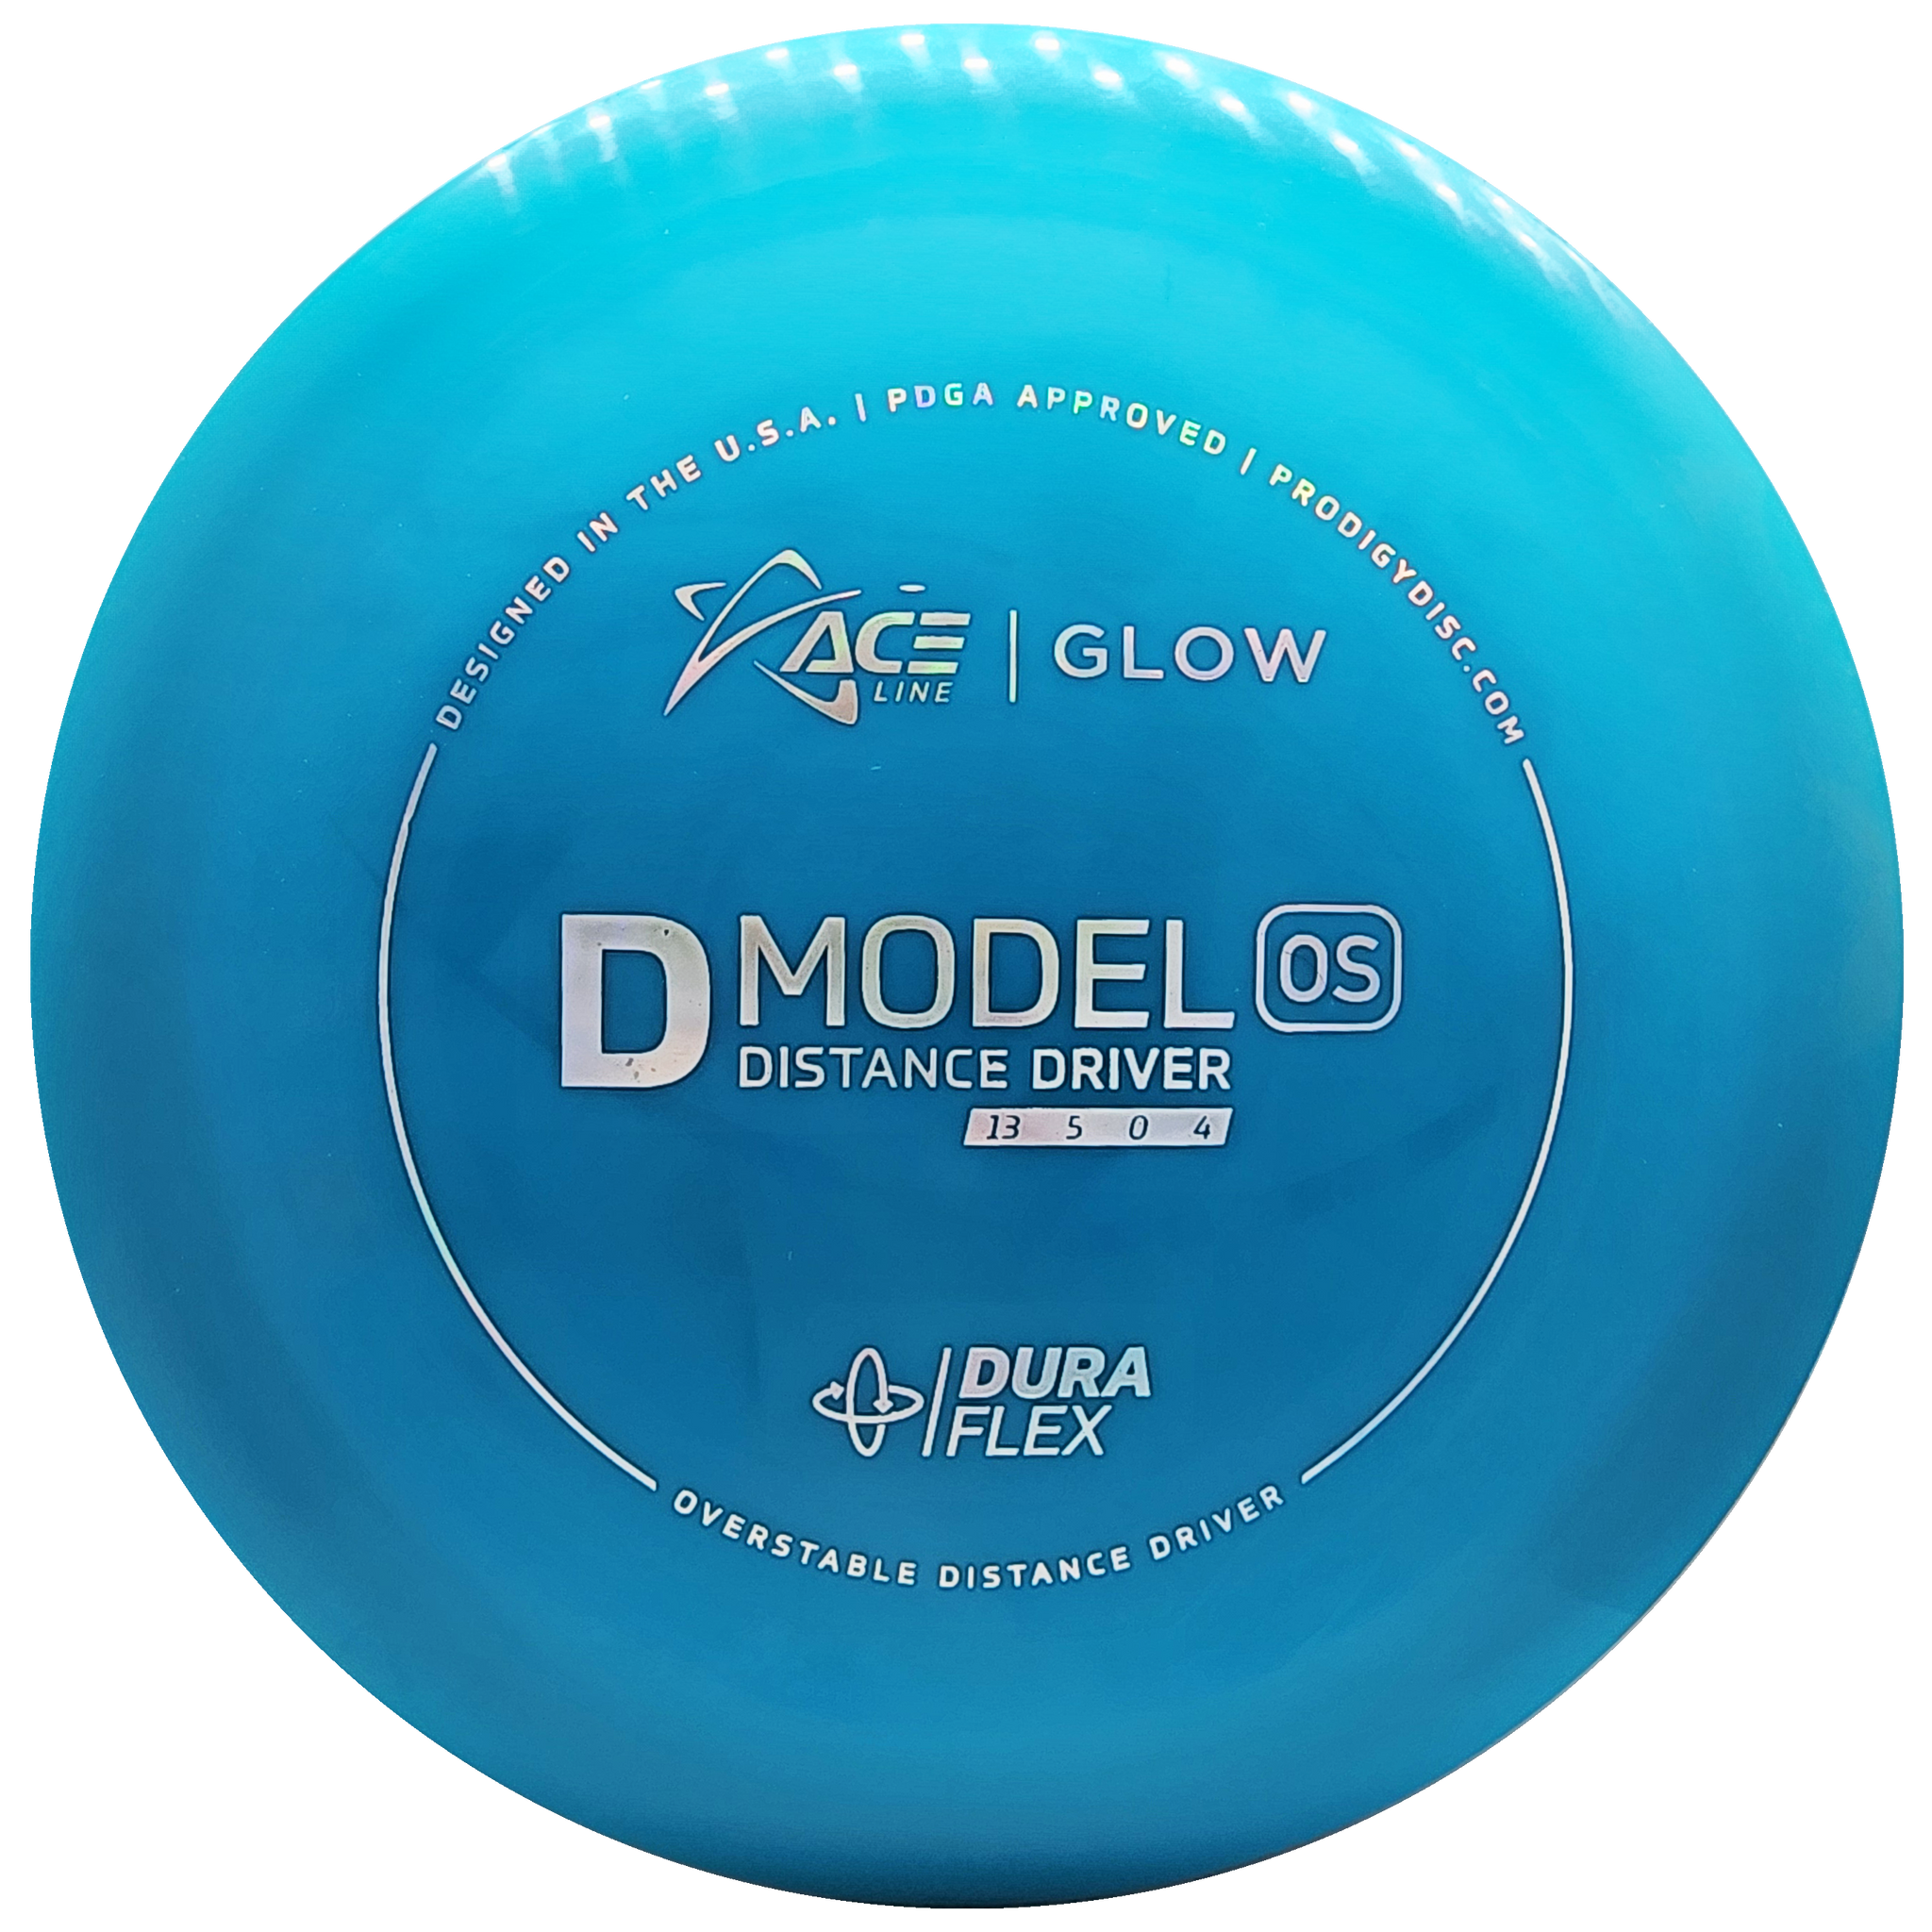 Prodigy: ACE Line D Model OS Distance Driver - DuraFlex GLOW Plastic - Blue/Silver